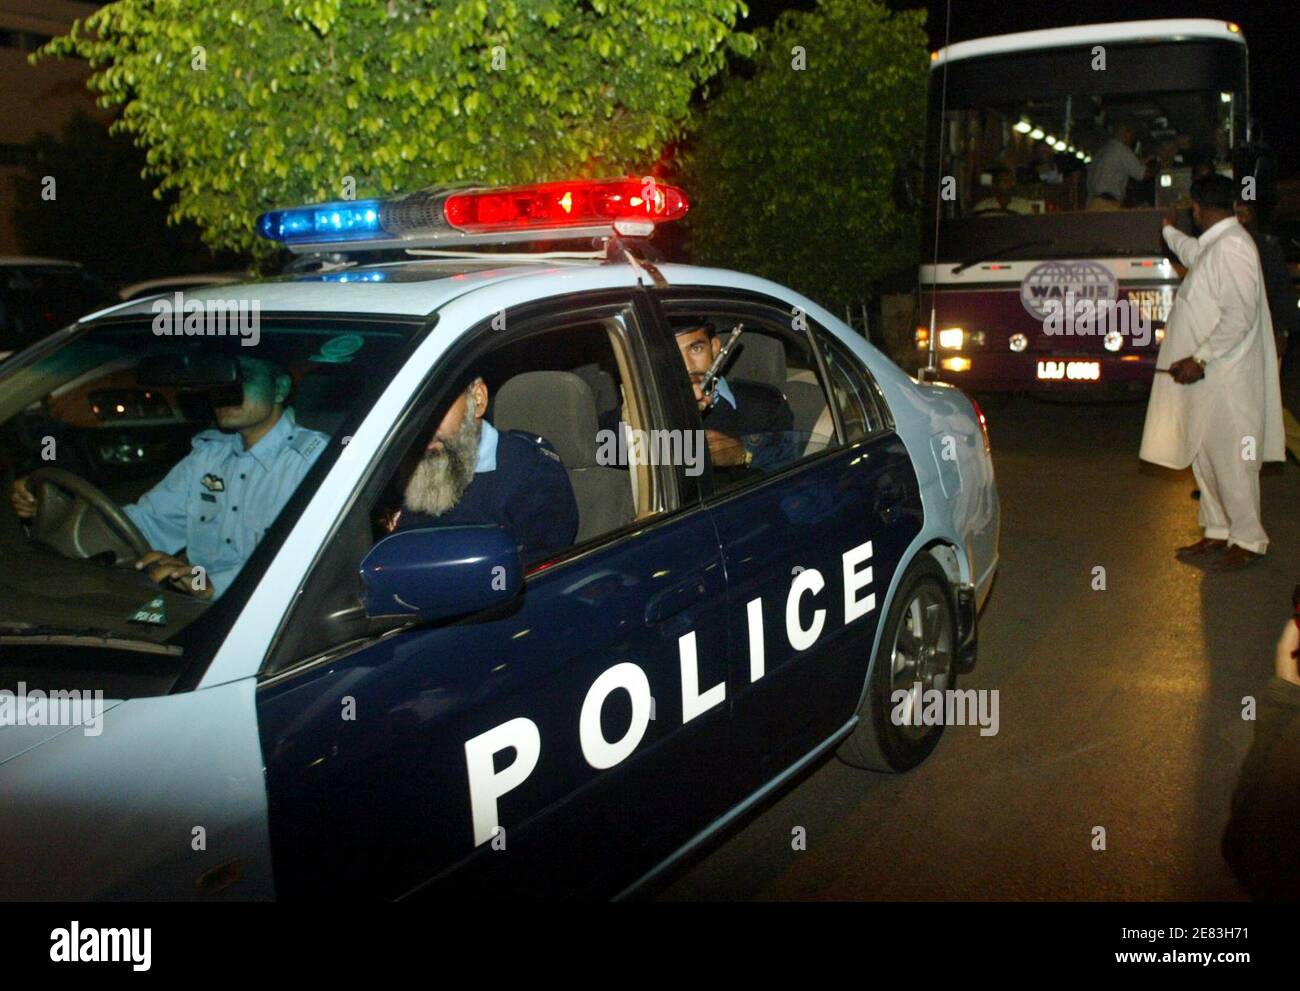 Pakistanische Polizisten eskortieren einen Bus mit England Cricket-Team-Spieler nach ihrer Ankunft in Pakistan Islamabad International Airport 26. Oktober 2005. Das Team kam vor ihrer Wintertour nach Pakistan und sollen drei Tests und fünf One-Day Internationals spielen. Der erste Test in Multan startet am 12. November. REUTERS/Faisal Mahmood Stockfoto